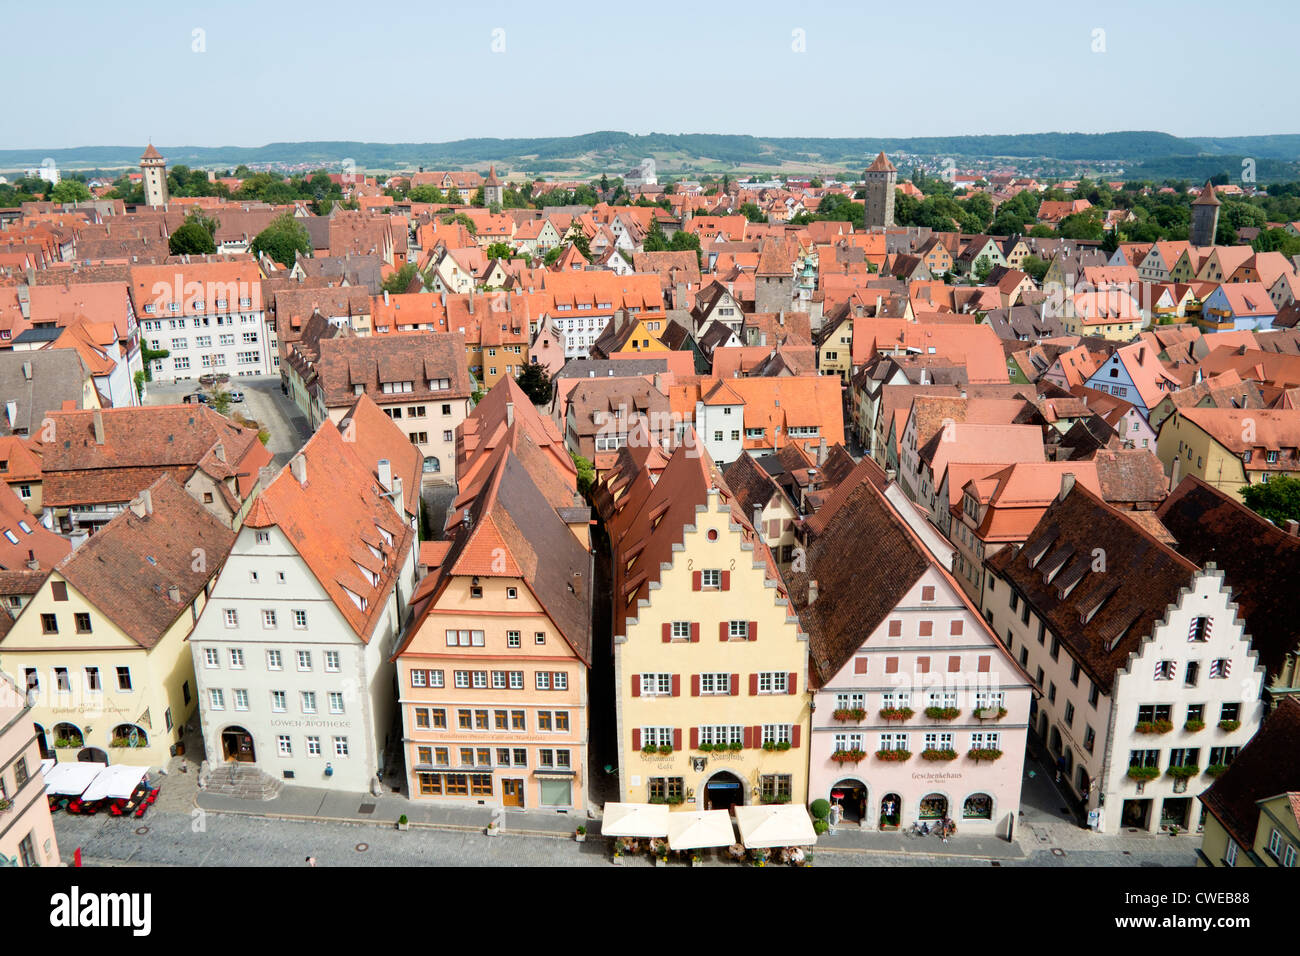 Rothenburg ob der Tauber ville médiévale en Bavière, Allemagne Banque D'Images